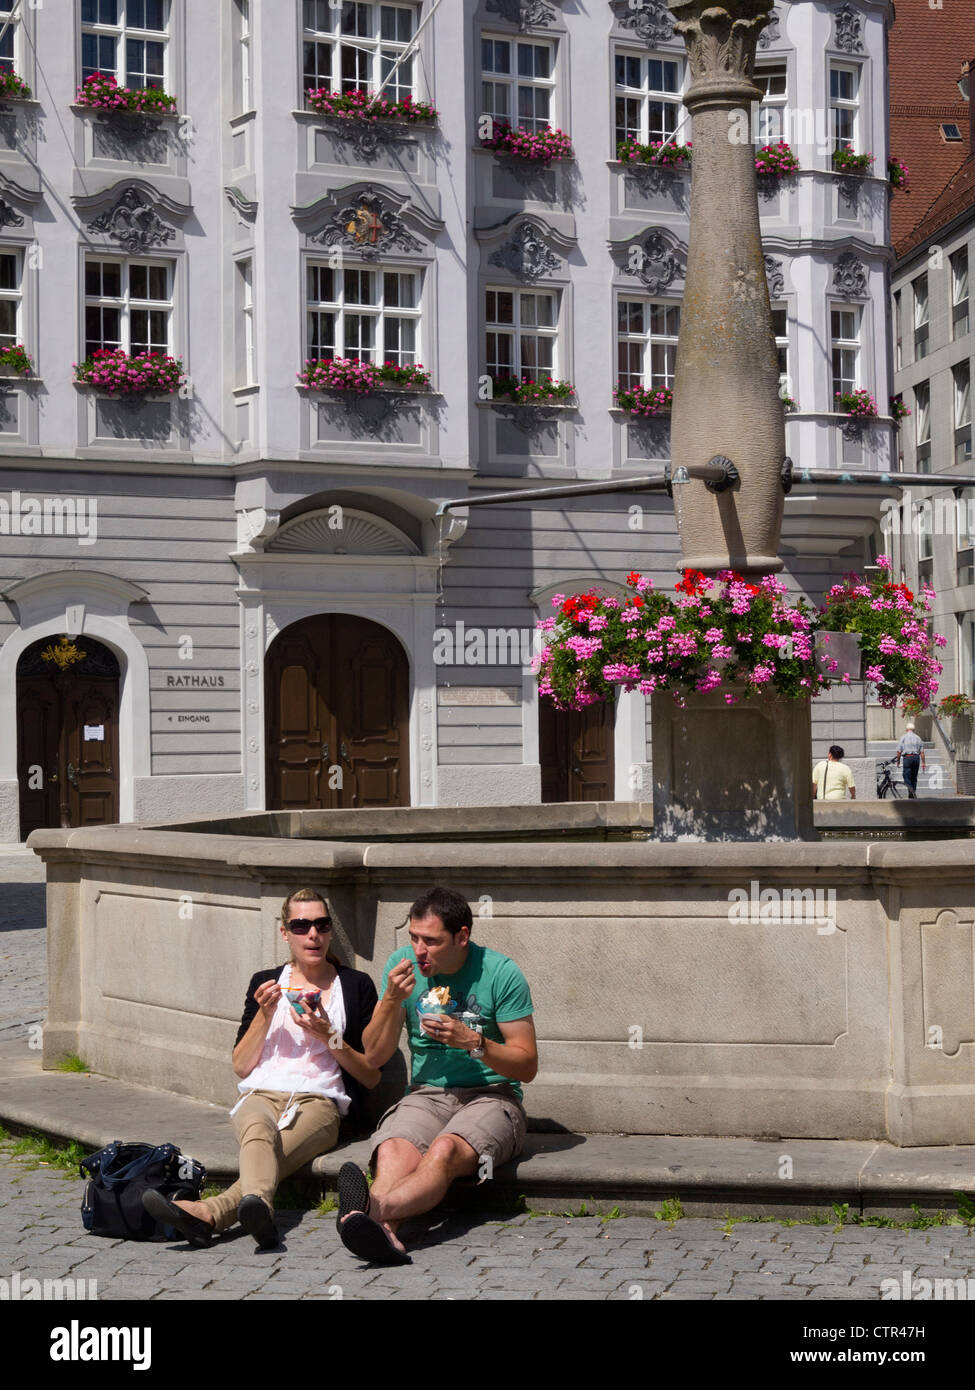 Couple eating ice cream dans les rues de Memmingen, Allemagne, Europe Banque D'Images